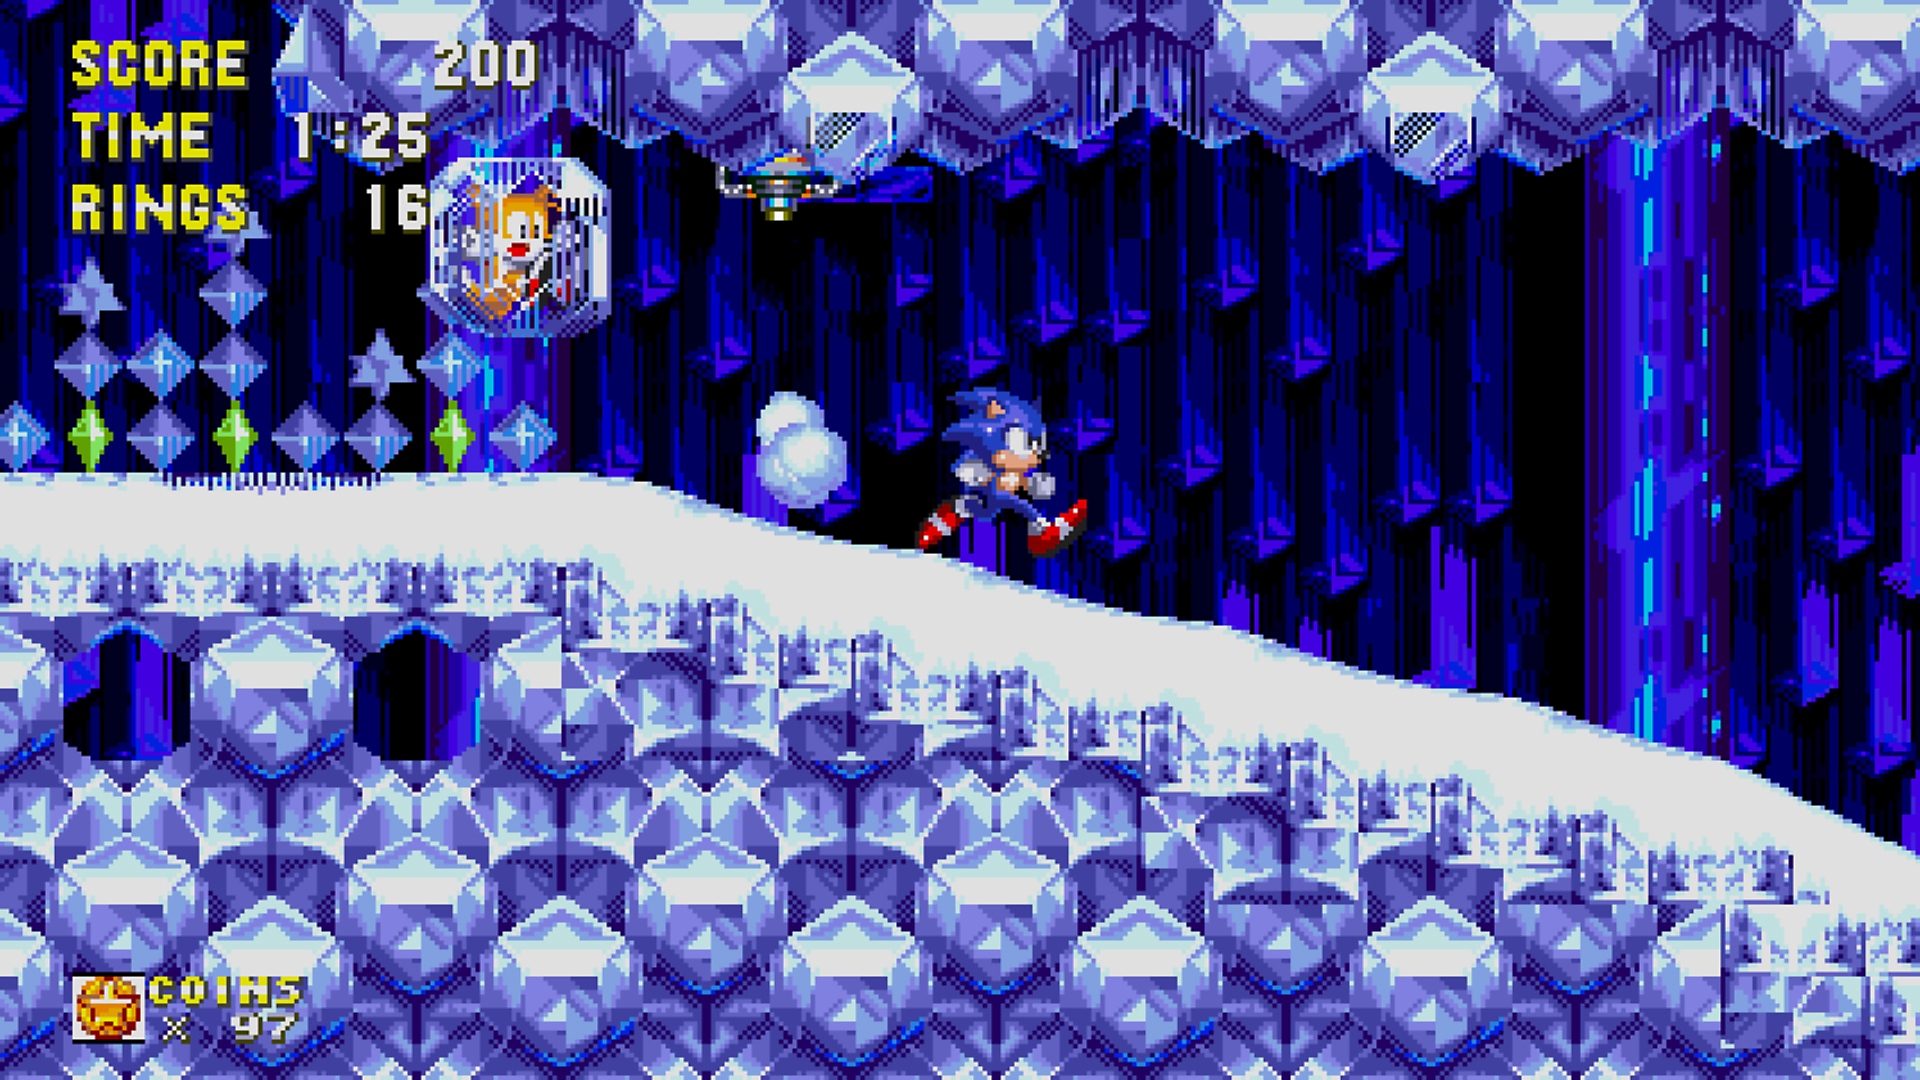 لقطة شاشة من Sonic Origins تعرض Sonic يركض في مستوى جليدي